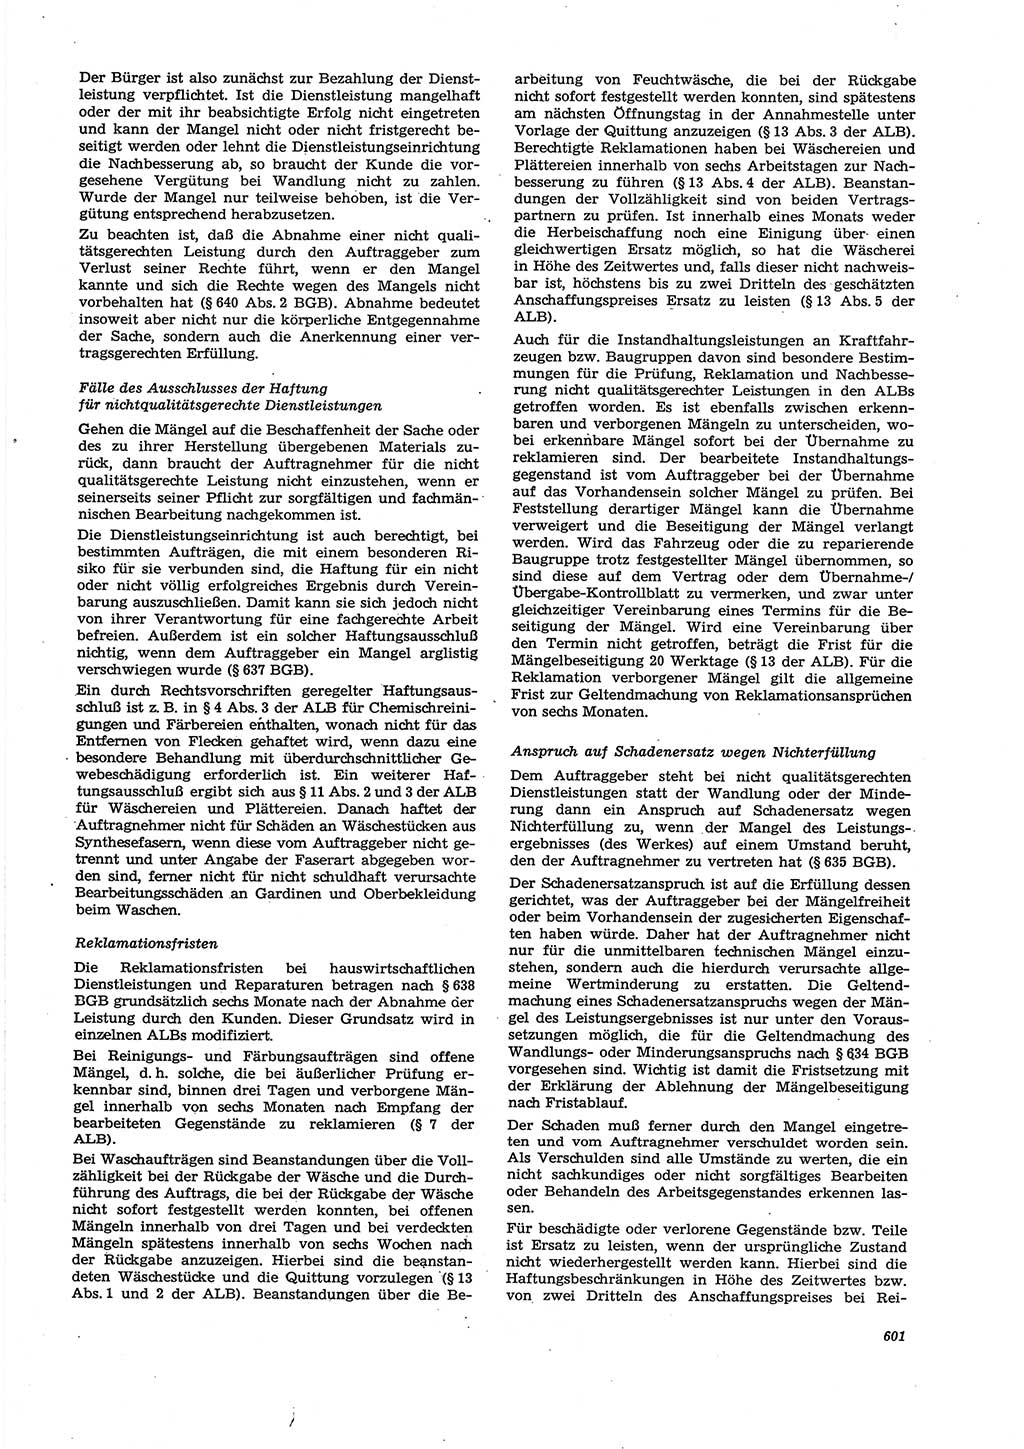 Neue Justiz (NJ), Zeitschrift für Recht und Rechtswissenschaft [Deutsche Demokratische Republik (DDR)], 27. Jahrgang 1973, Seite 601 (NJ DDR 1973, S. 601)